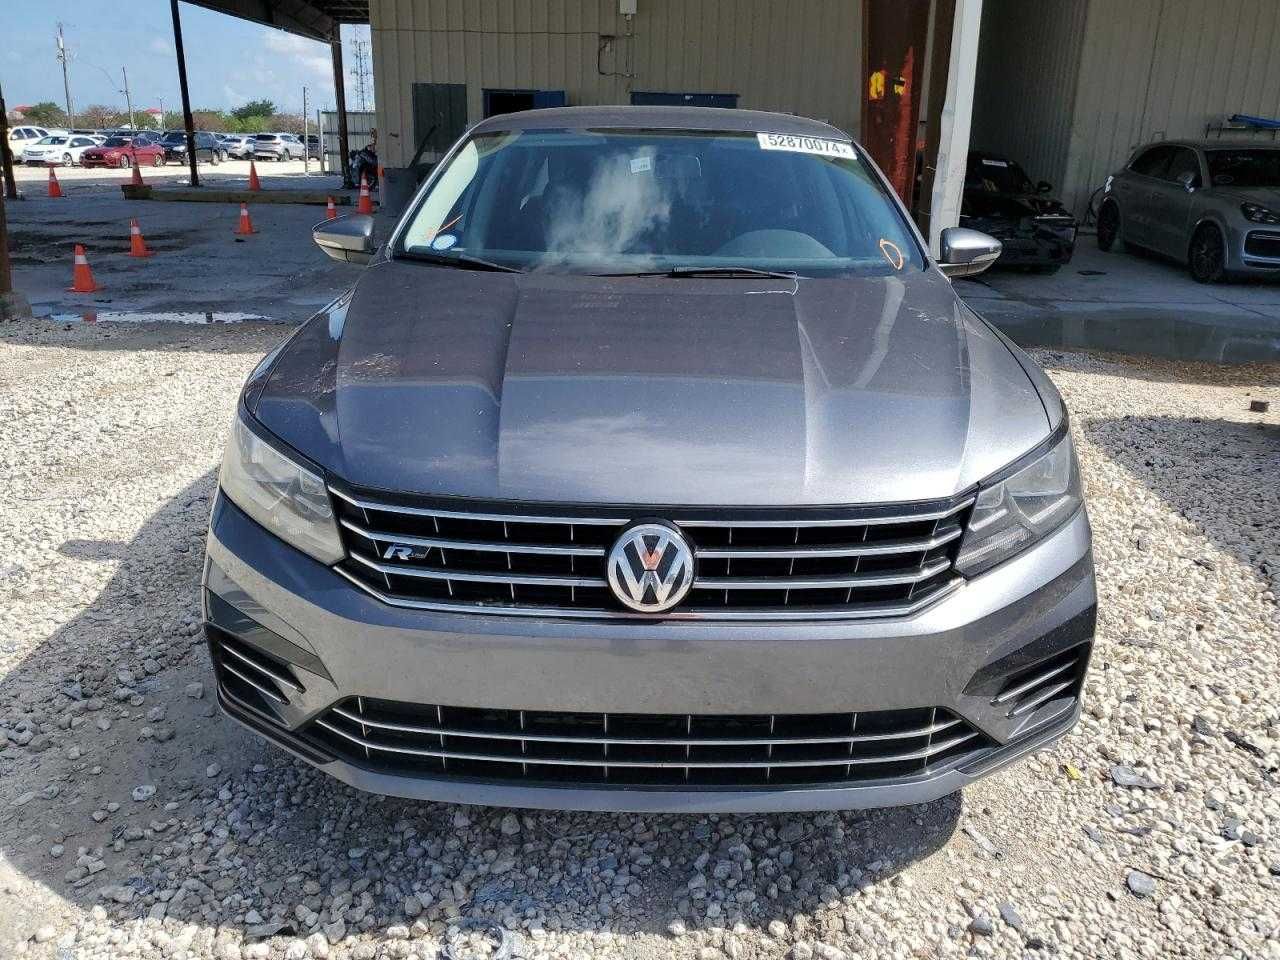 Volkswagen Passat R-Line 2017